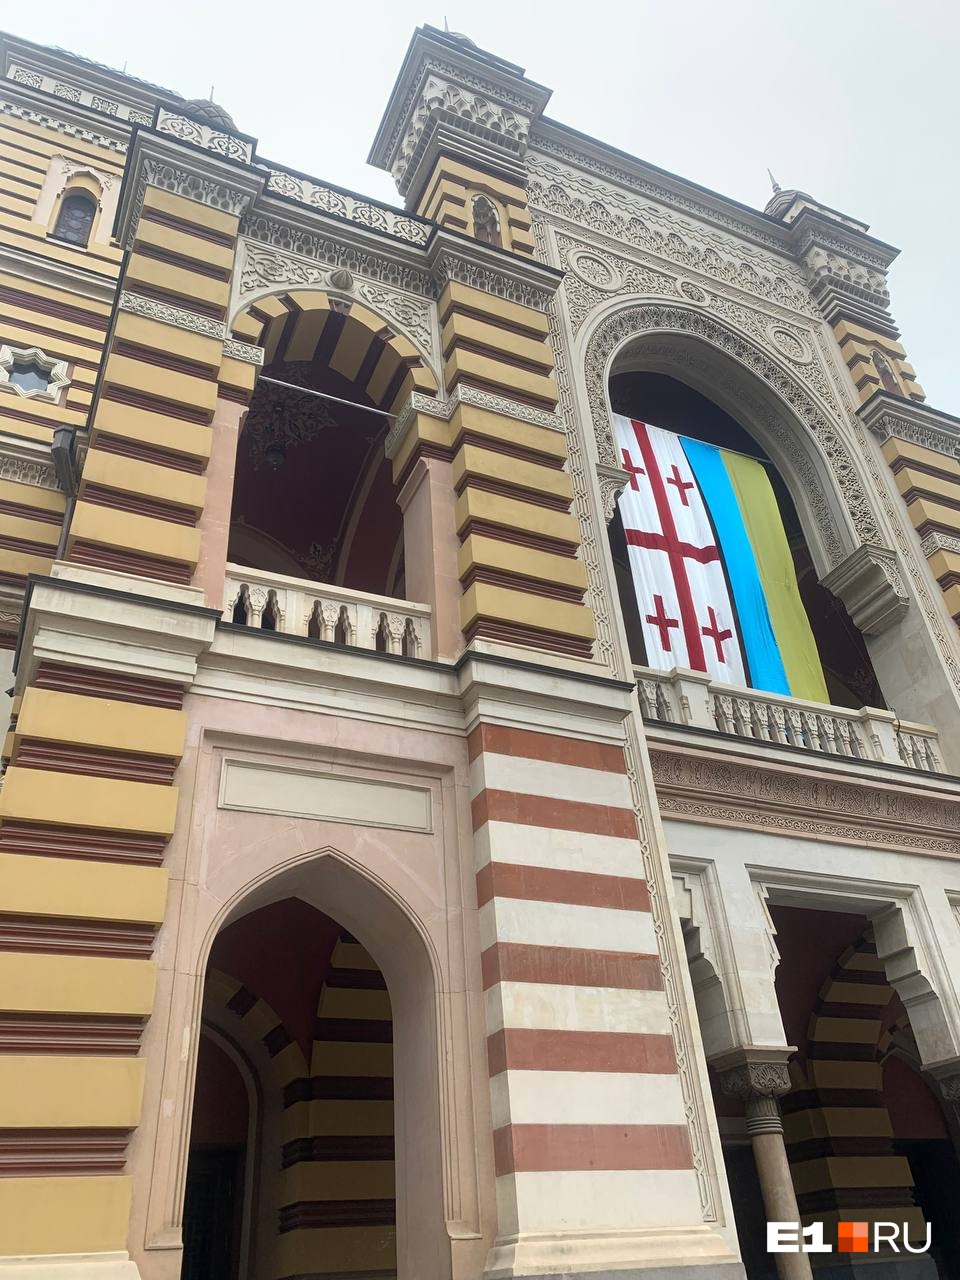 Такие флаги в наши дни часто встречаются на фасадах зданий в грузинской столице